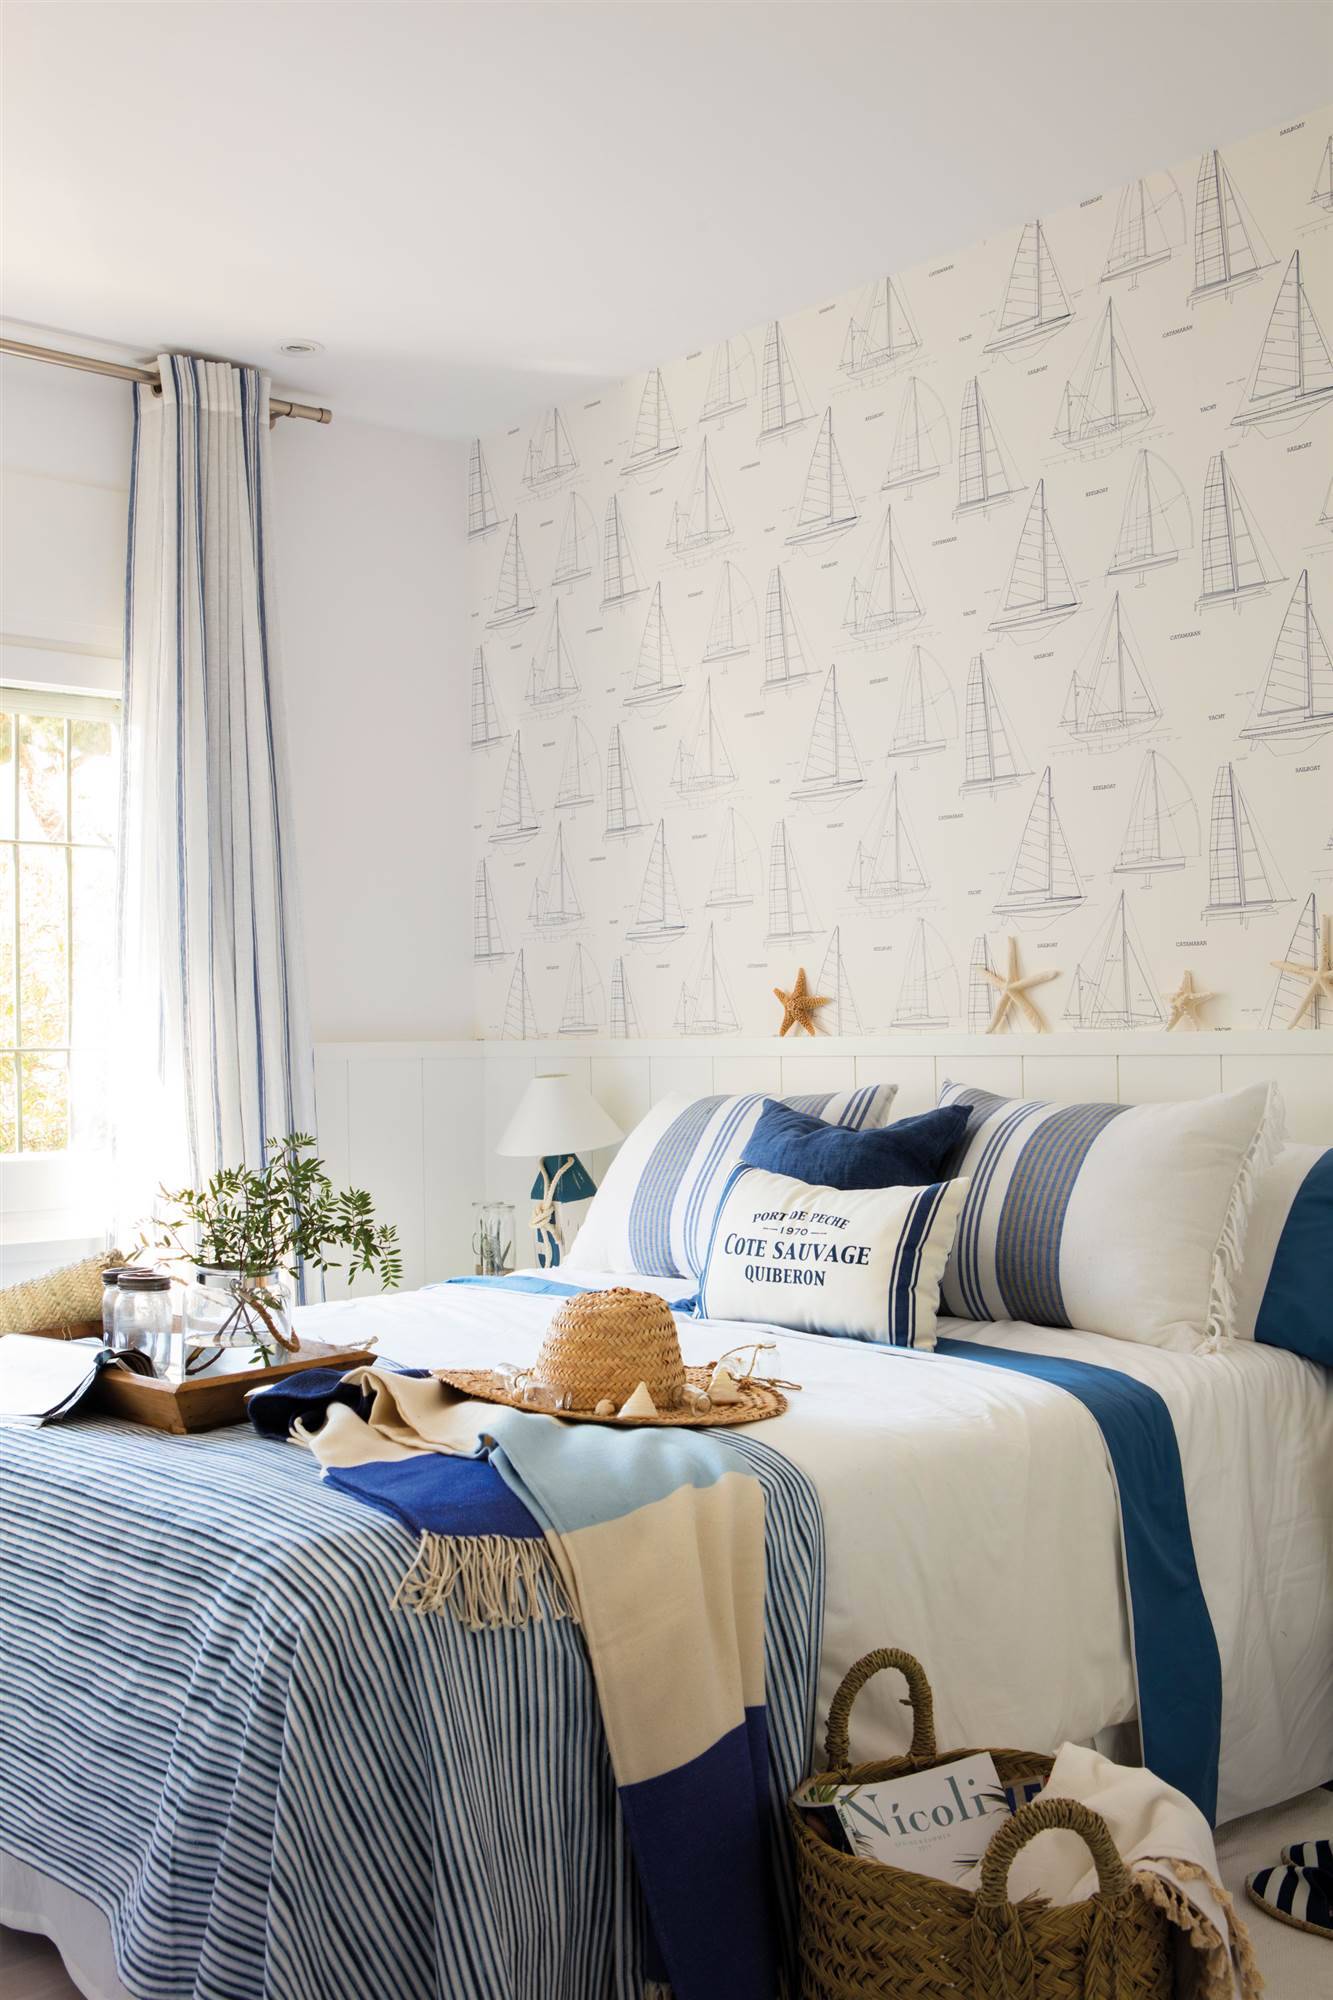 Dormitorio en blanco y azul decorado con motivos náuticos 00460587